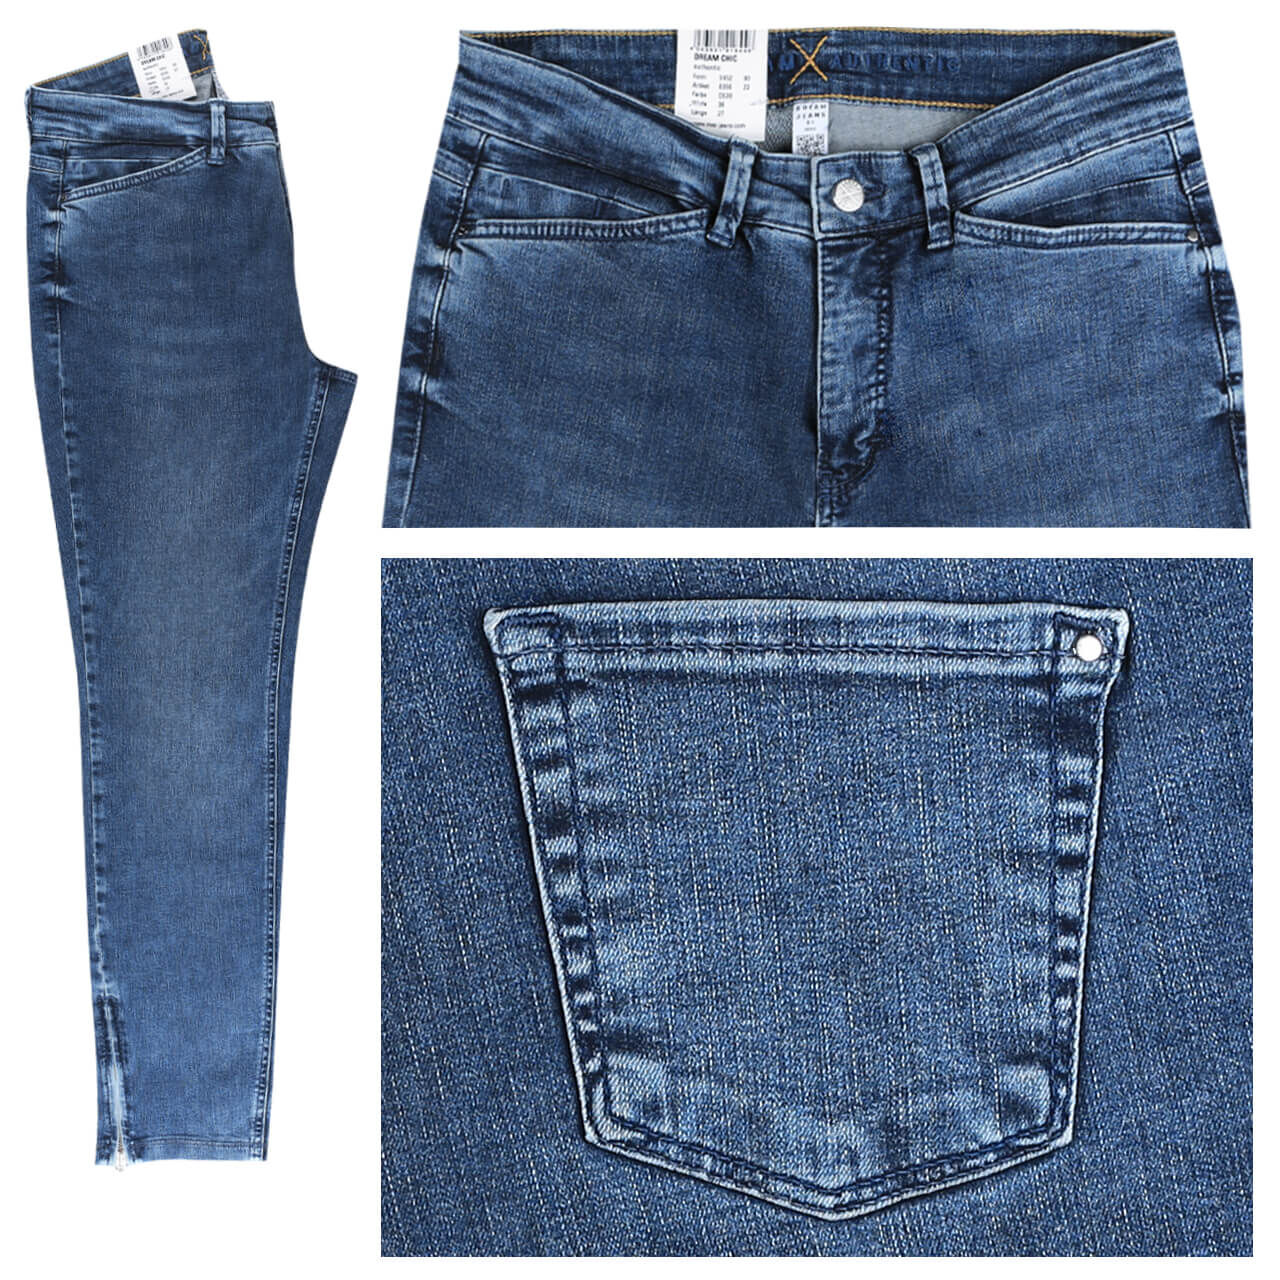 MAC Jeans Dream Chic für Damen in Mittelblau angewaschen, FarbNr.: D530